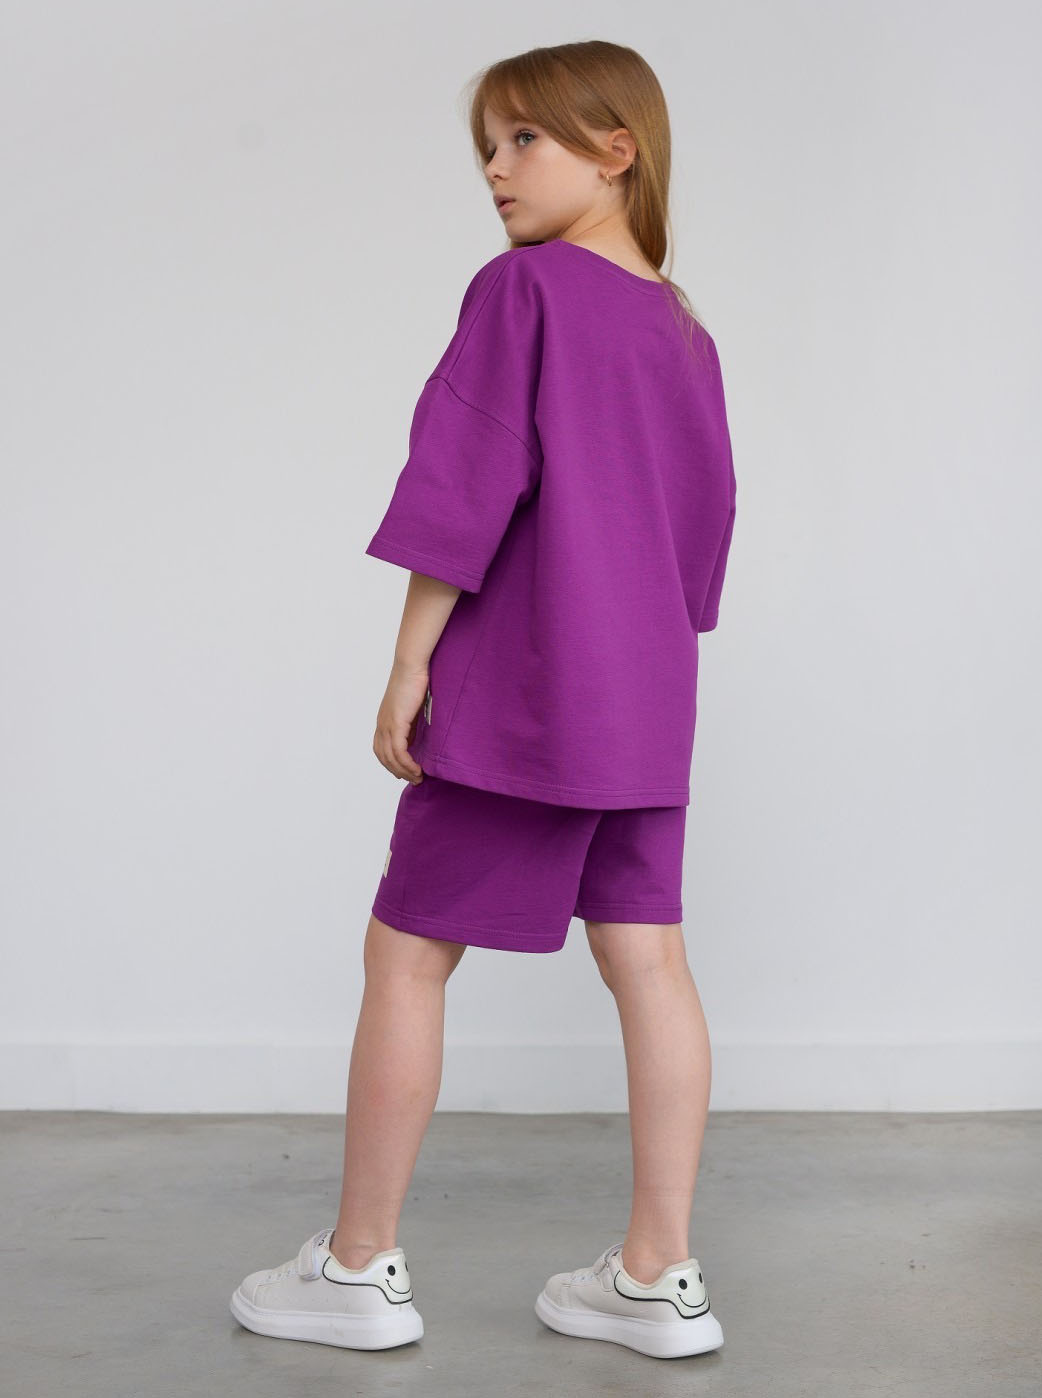 Костюм футболка та шорти для дівчинки Hart фіолетовий 1198 - розміри